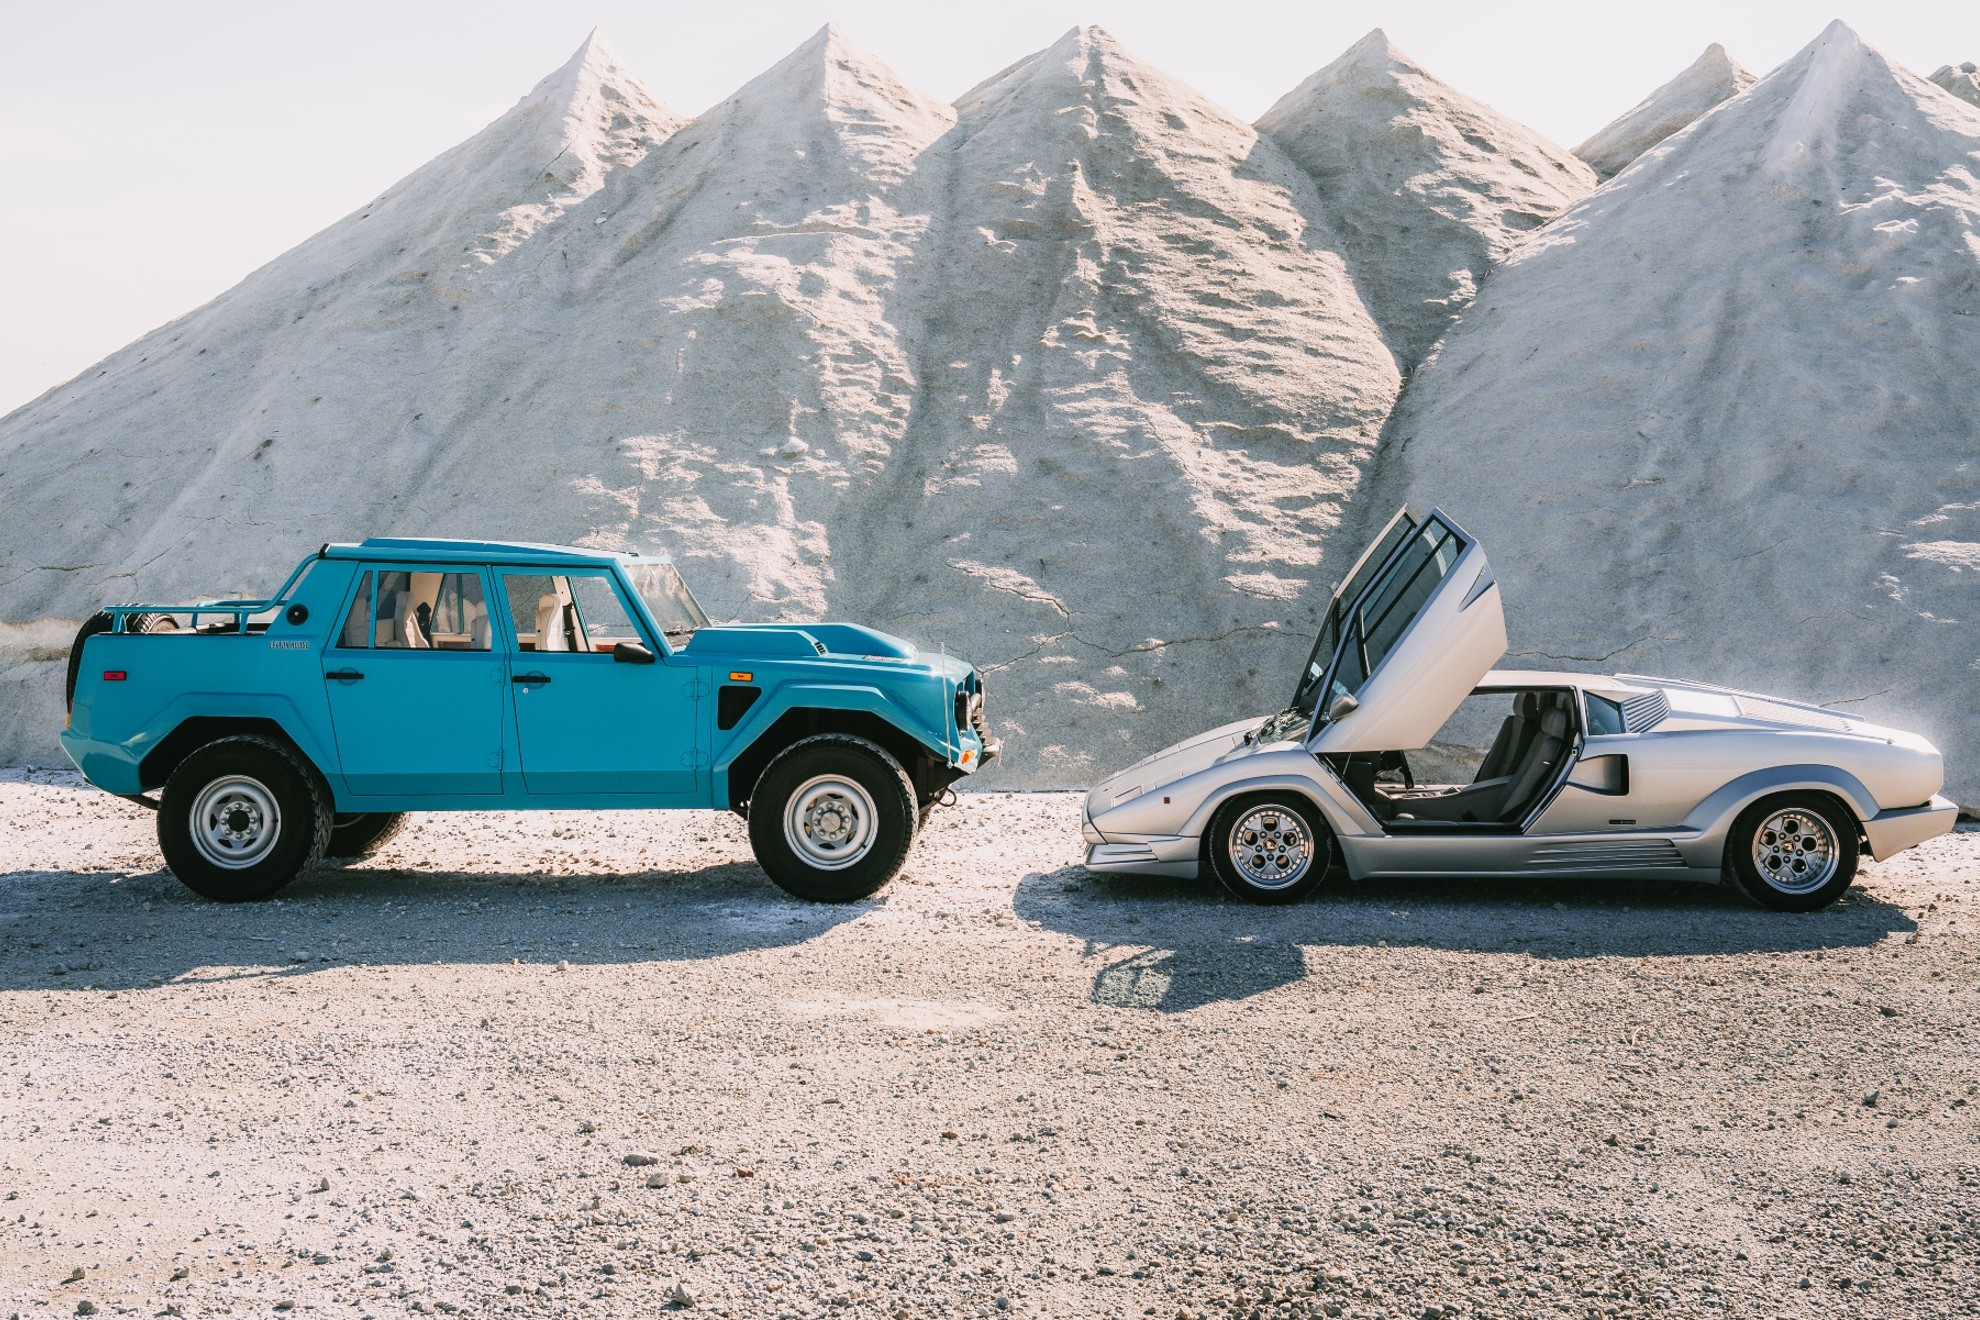 El LM002, a la izquierda, y el Countach '25 Aniversario' a la derecha. Foto: Lamborghini.